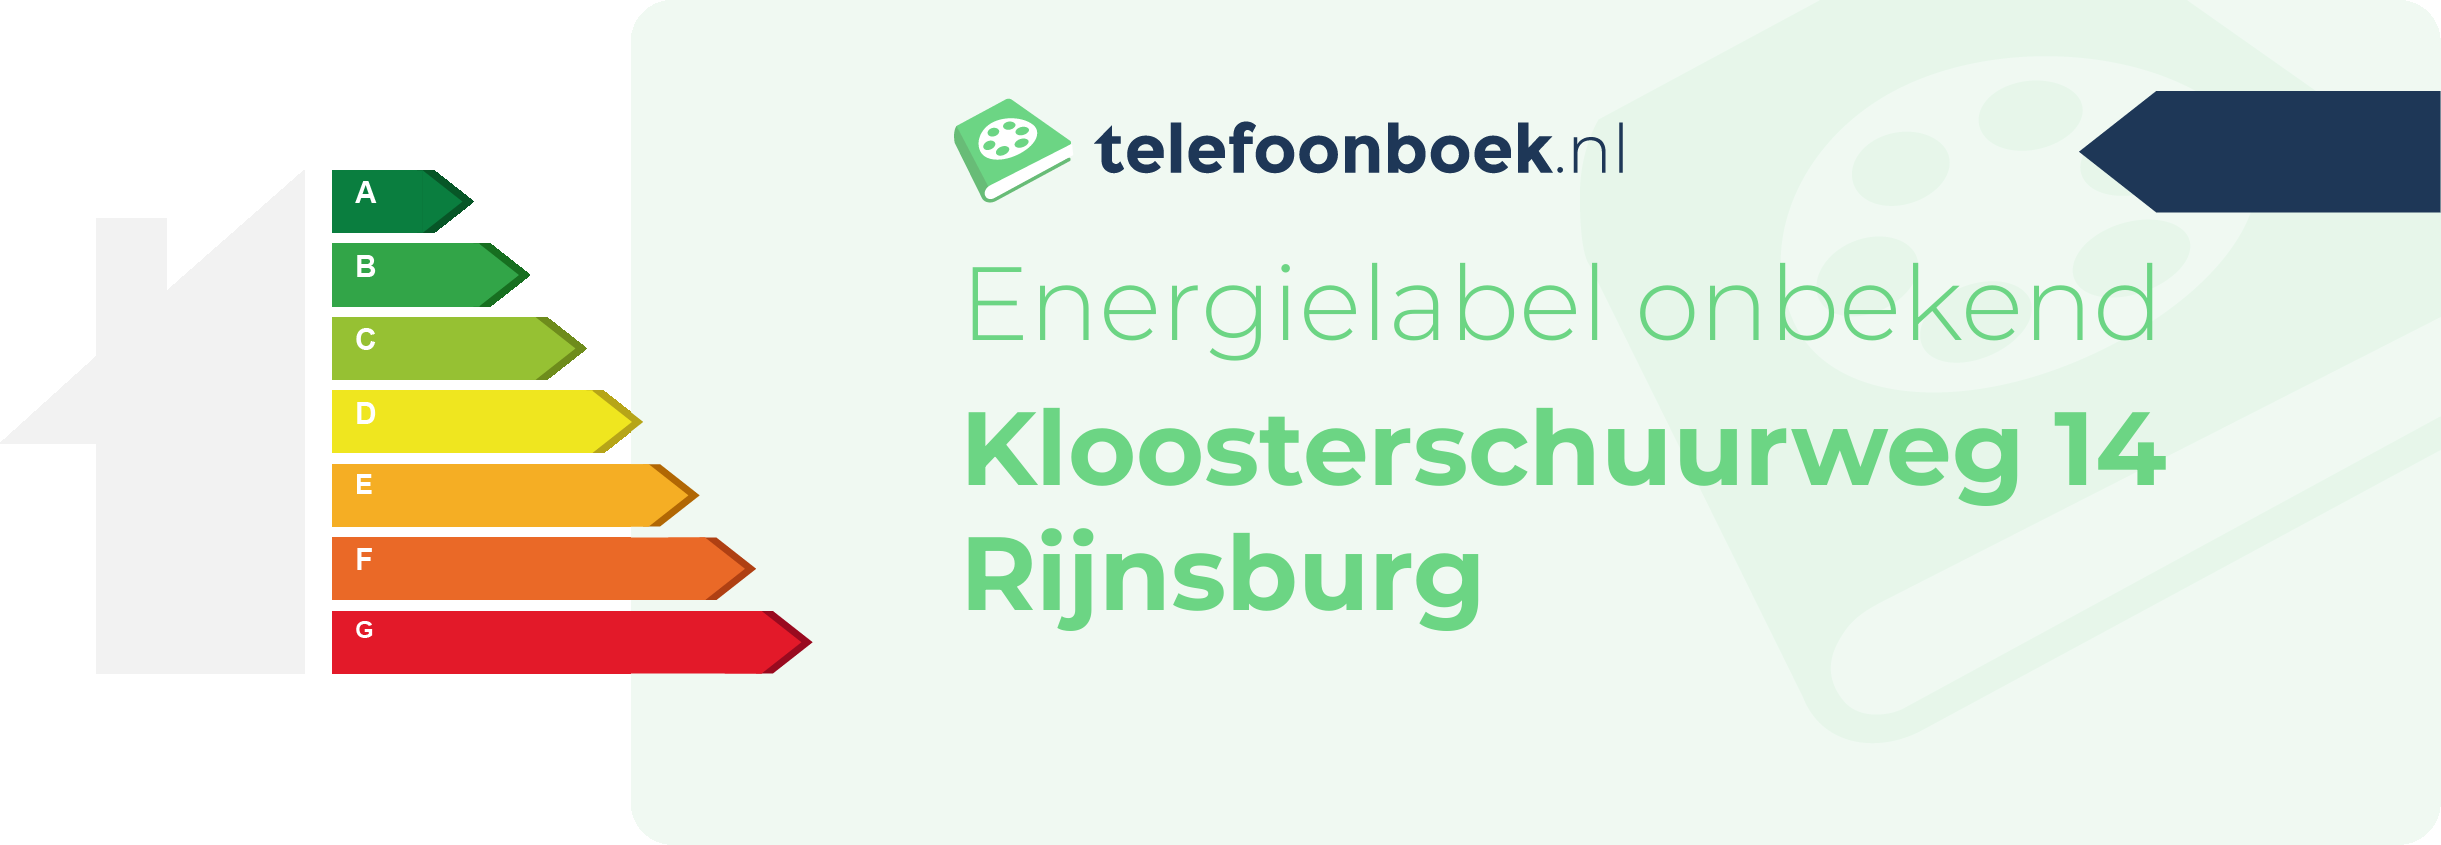 Energielabel Kloosterschuurweg 14 Rijnsburg